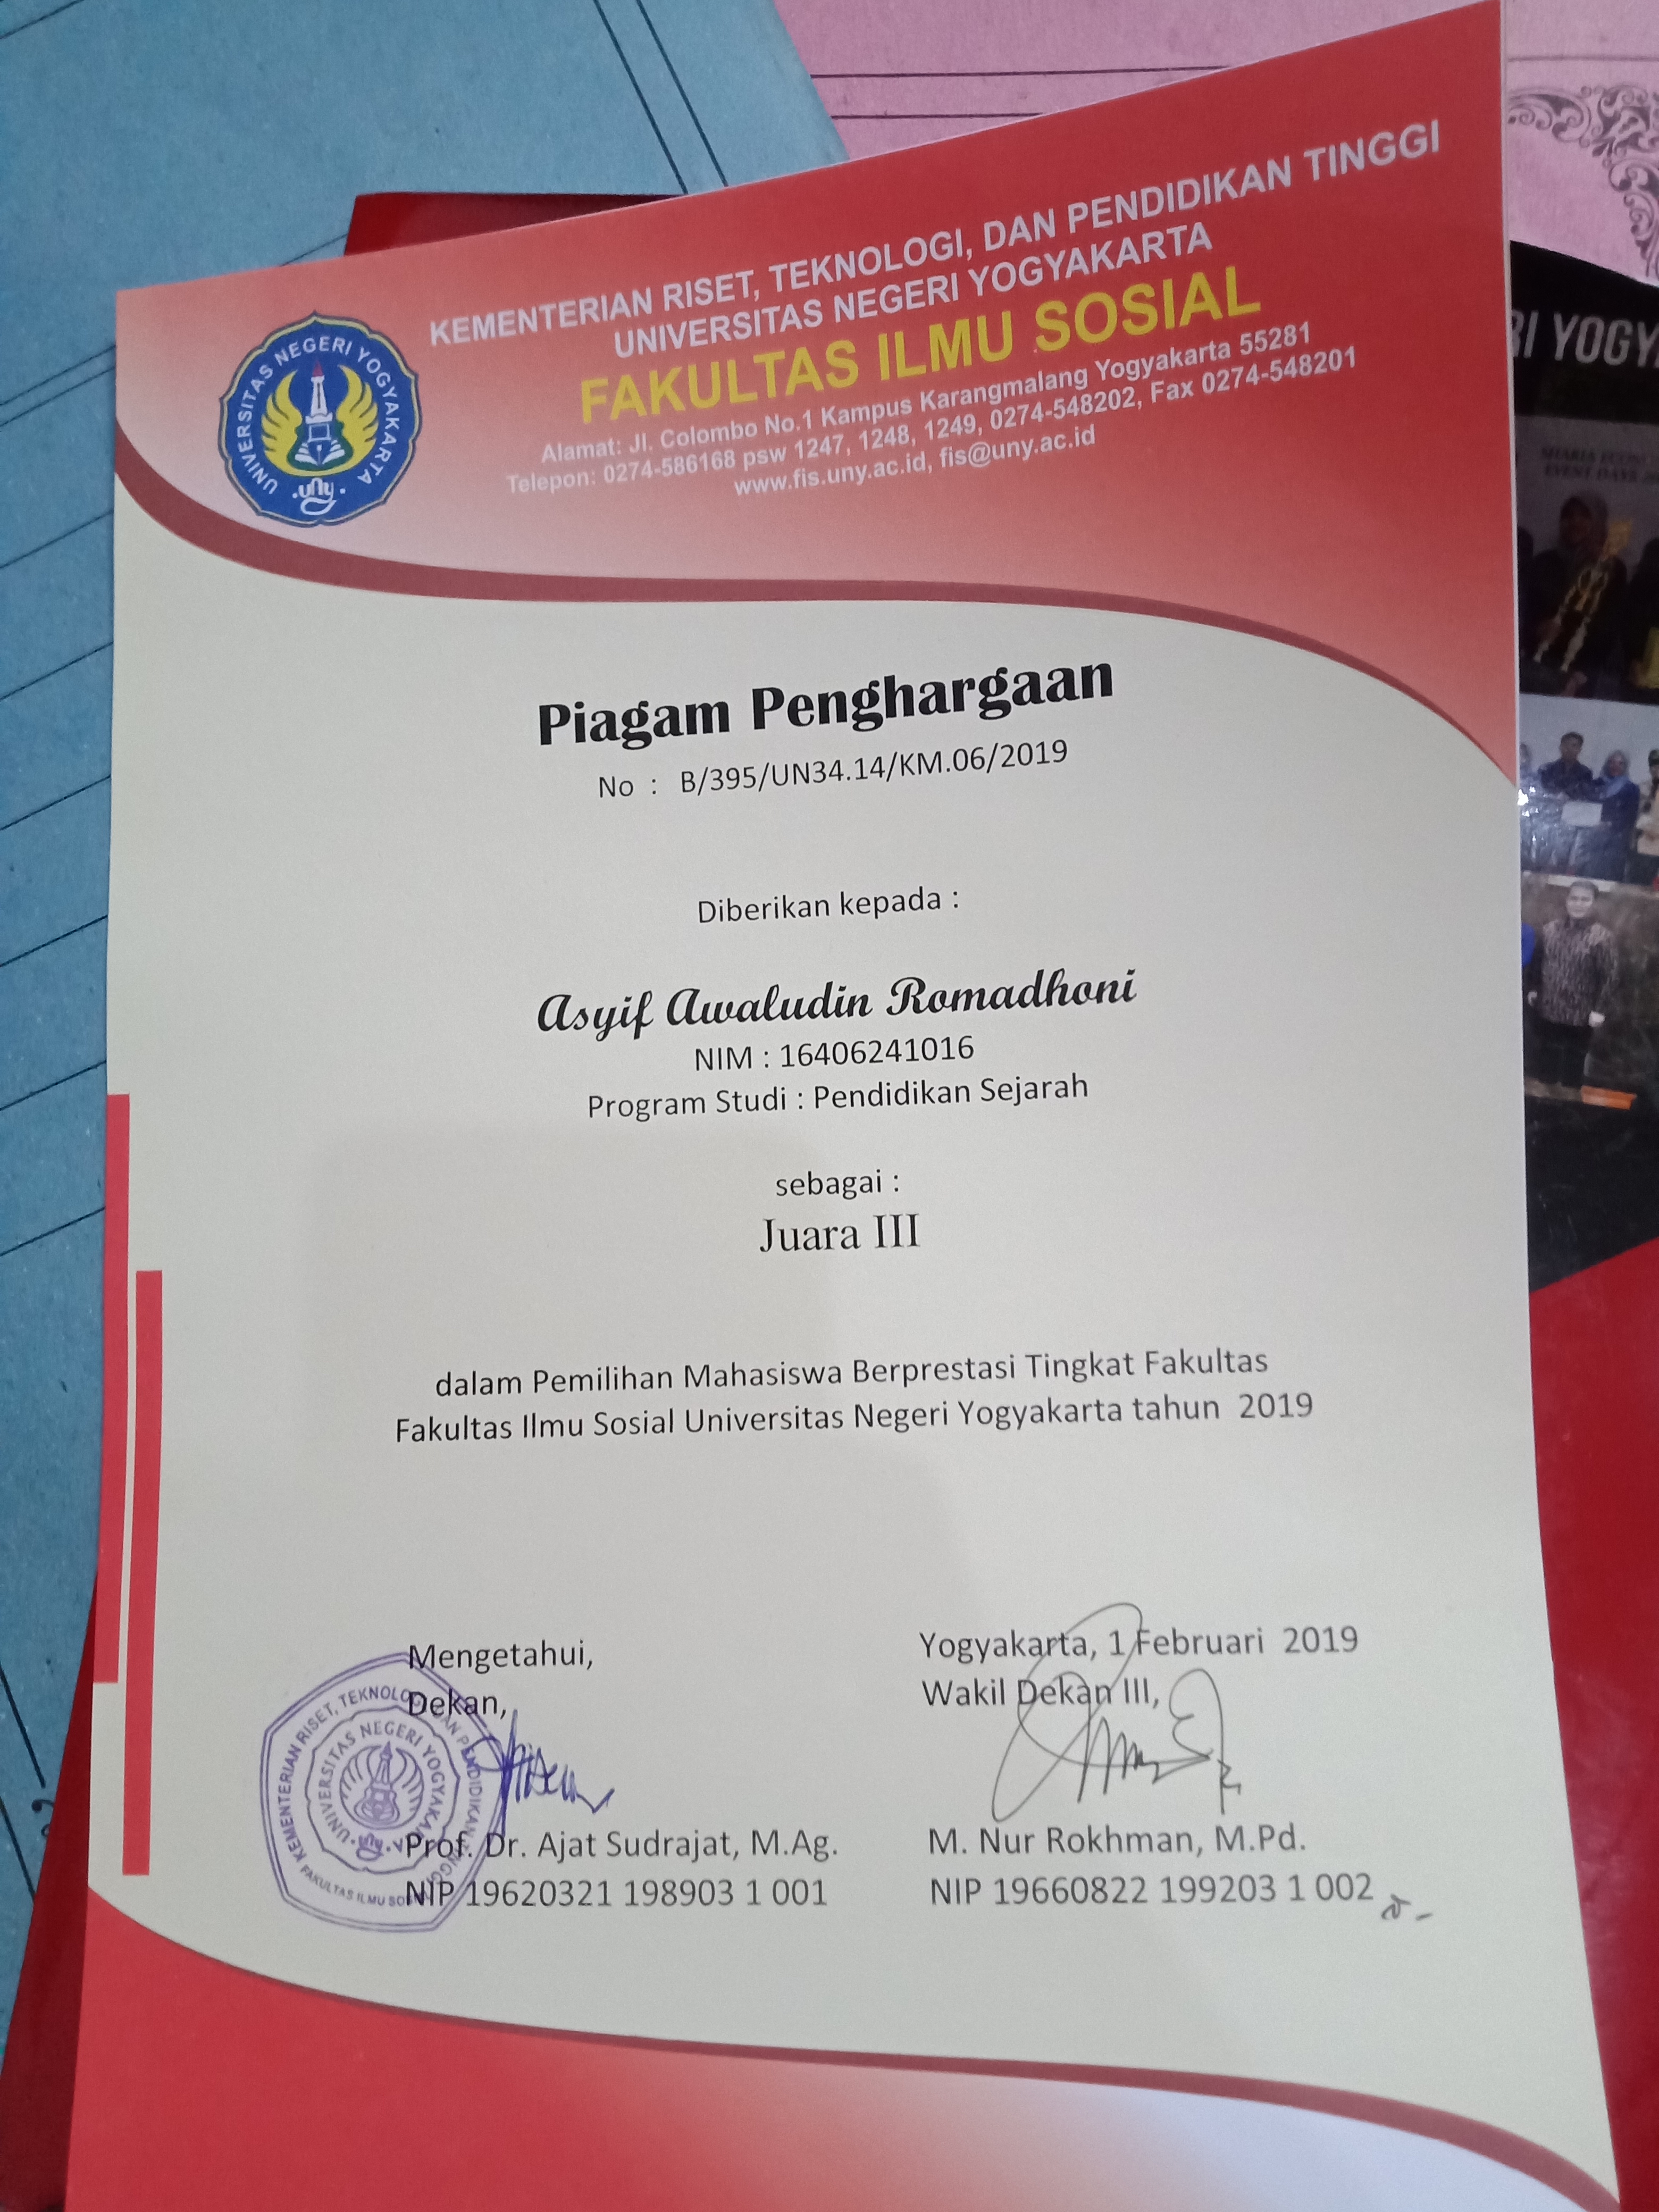 Foto Pemilihan Mahasiswa Berprestasi Fakultas Ilmu Sosial Universitas Negeri Yogyakarta 